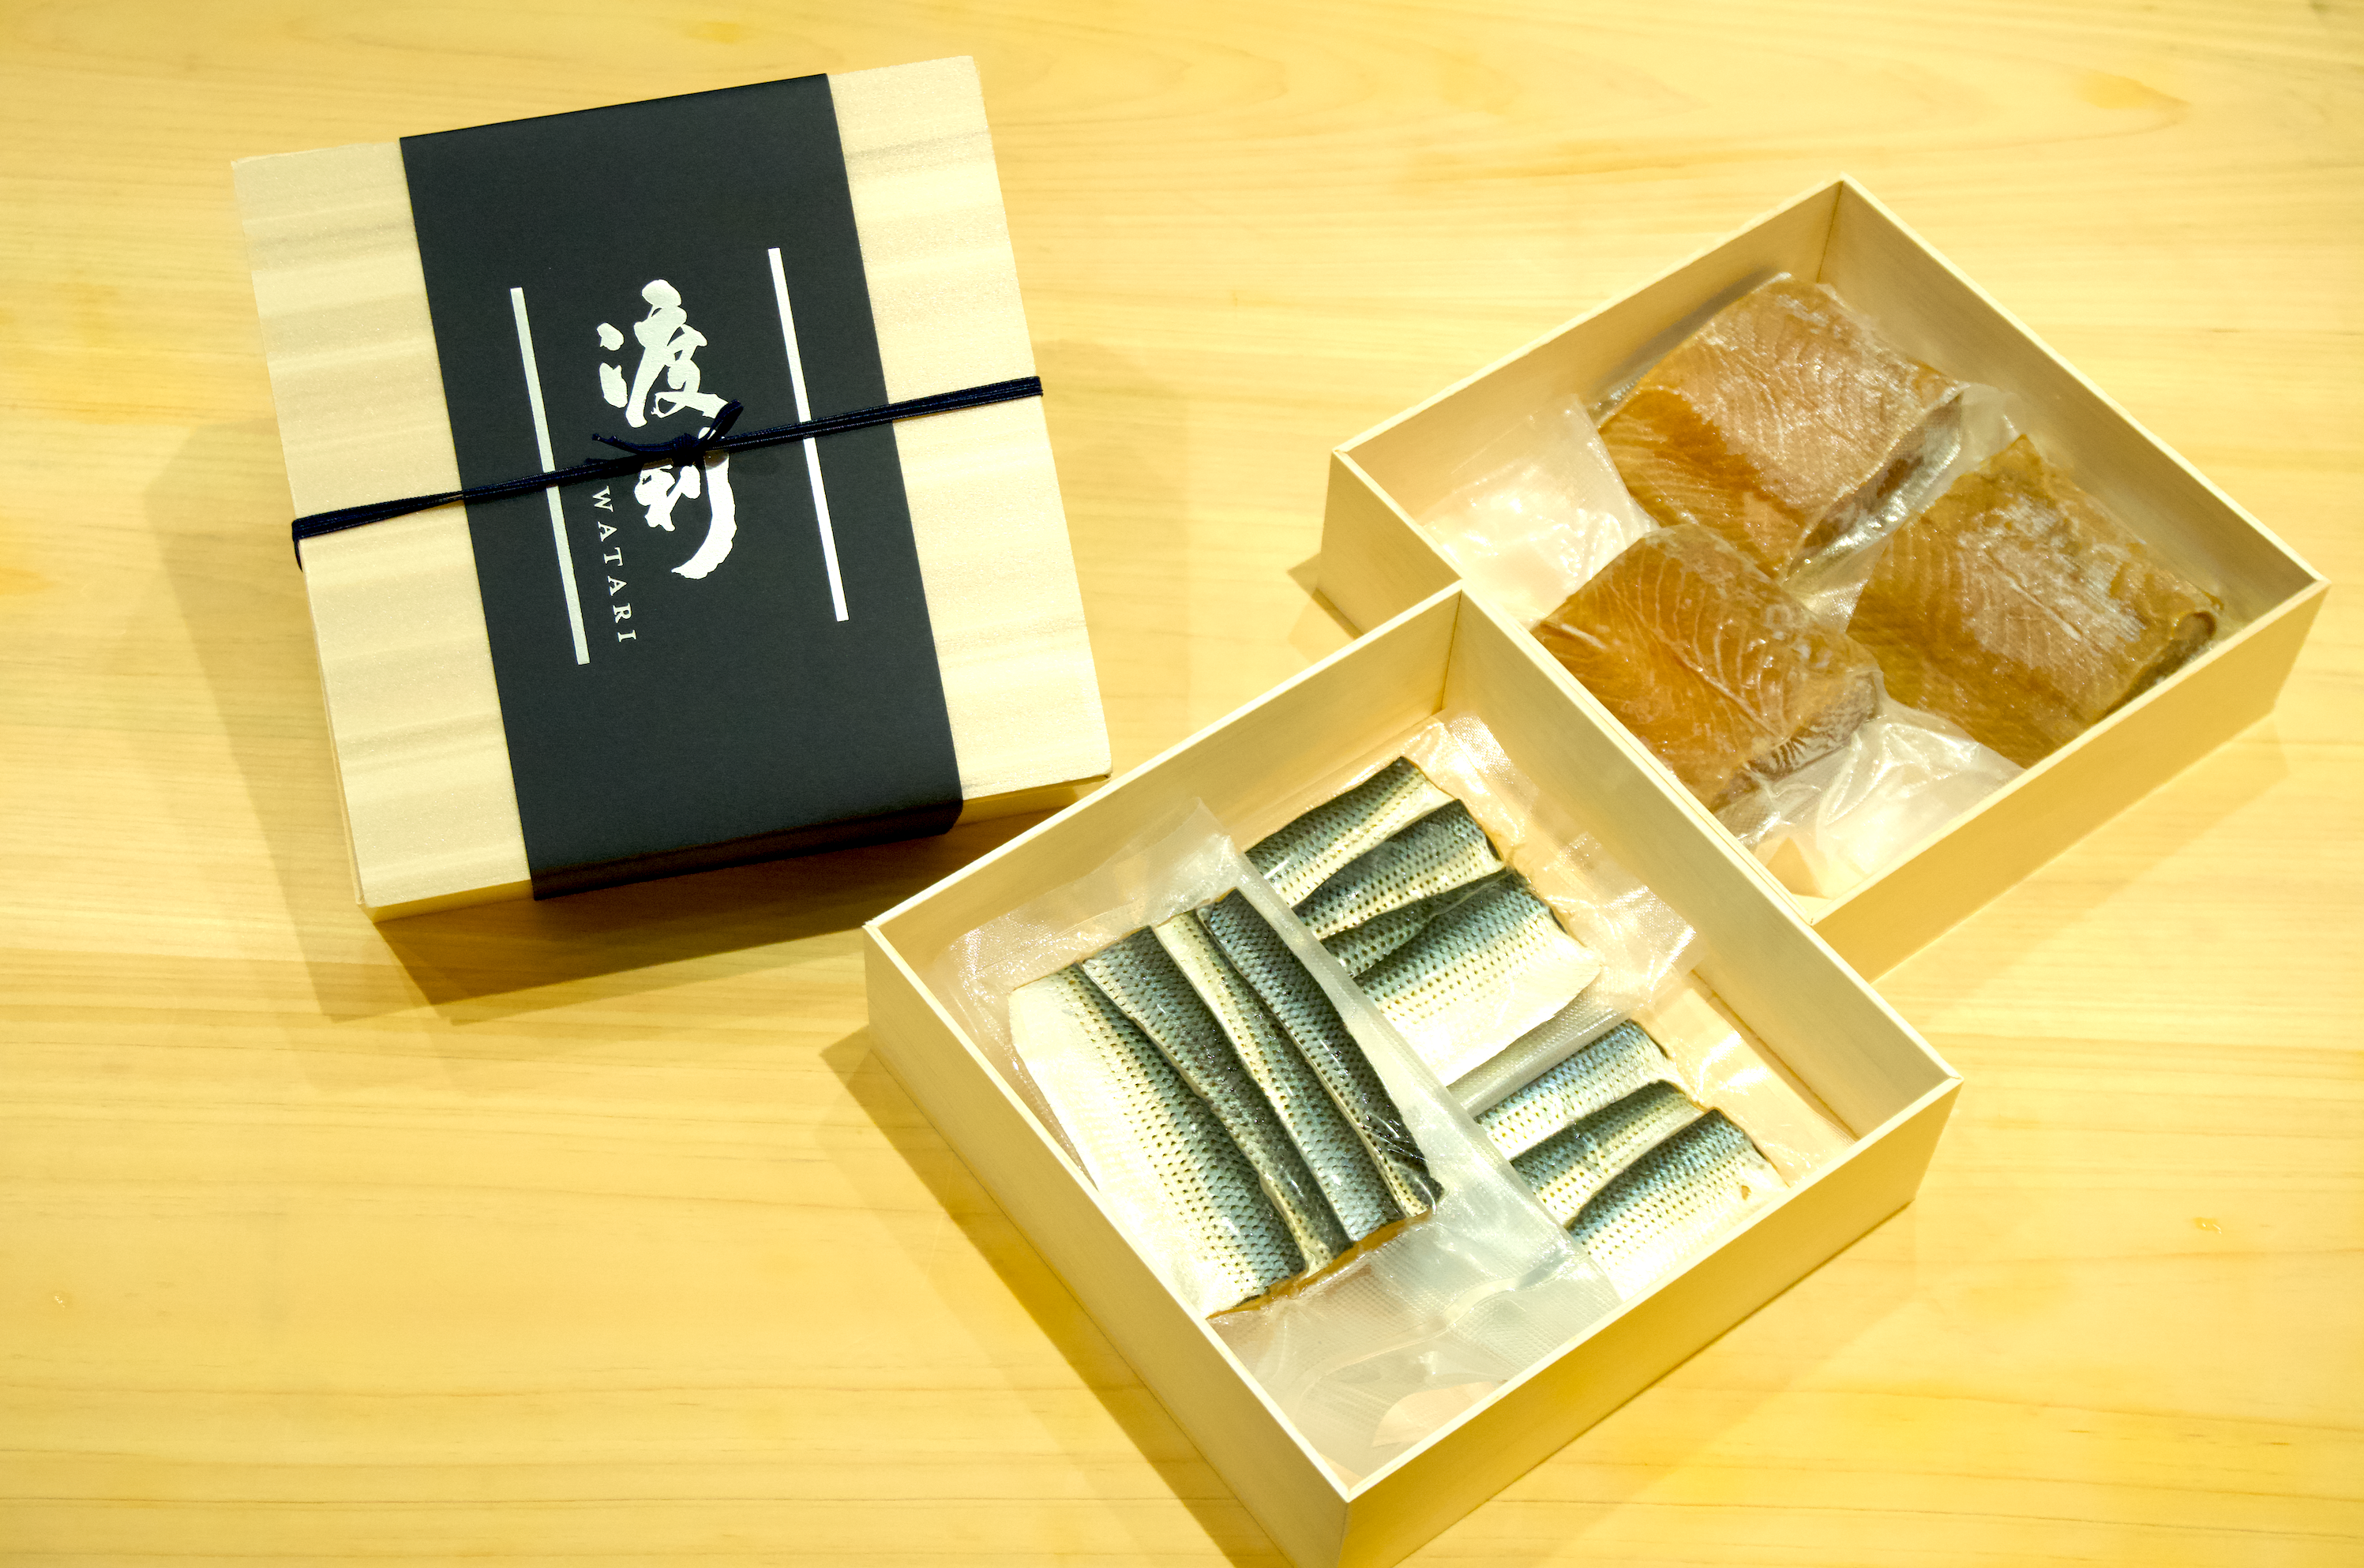 櫻桃鮭魚和小哈達拼盤（櫻桃鱒魚 x 3 小哈達 x 3）